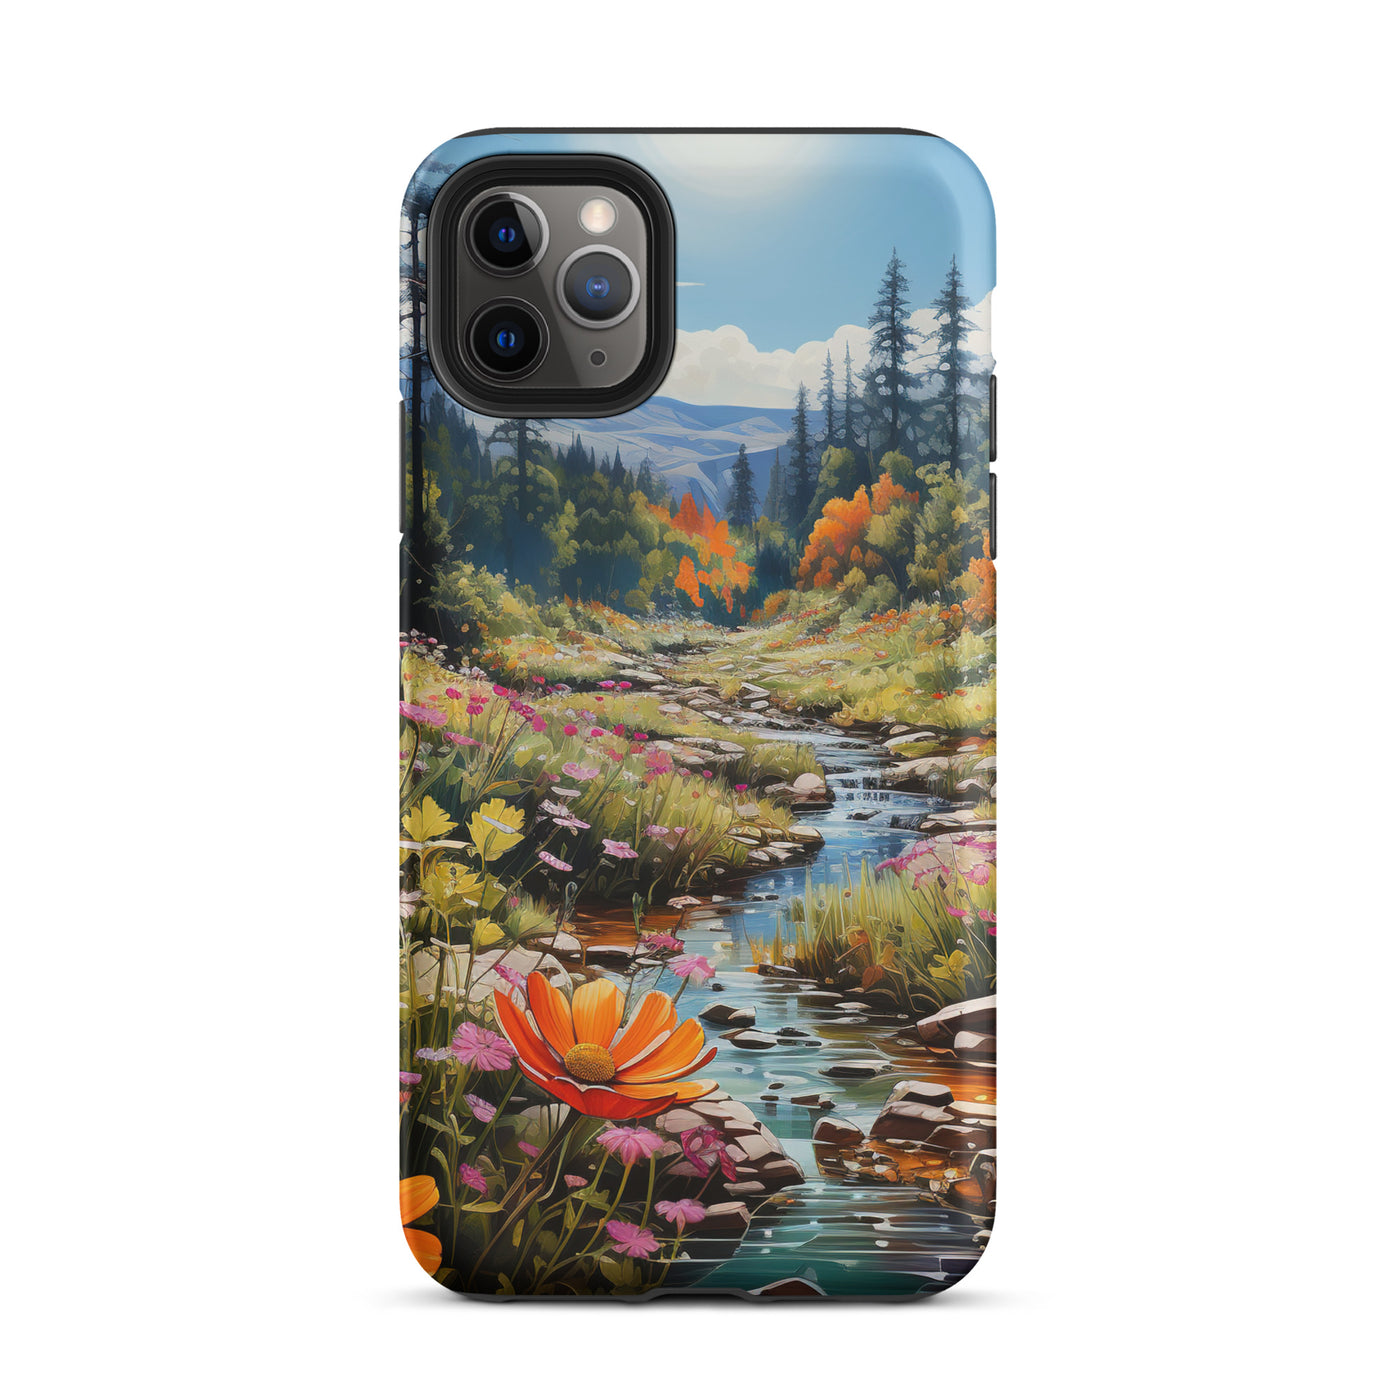 Berge, schöne Blumen und Bach im Wald - iPhone Schutzhülle (robust) berge xxx iPhone 11 Pro Max